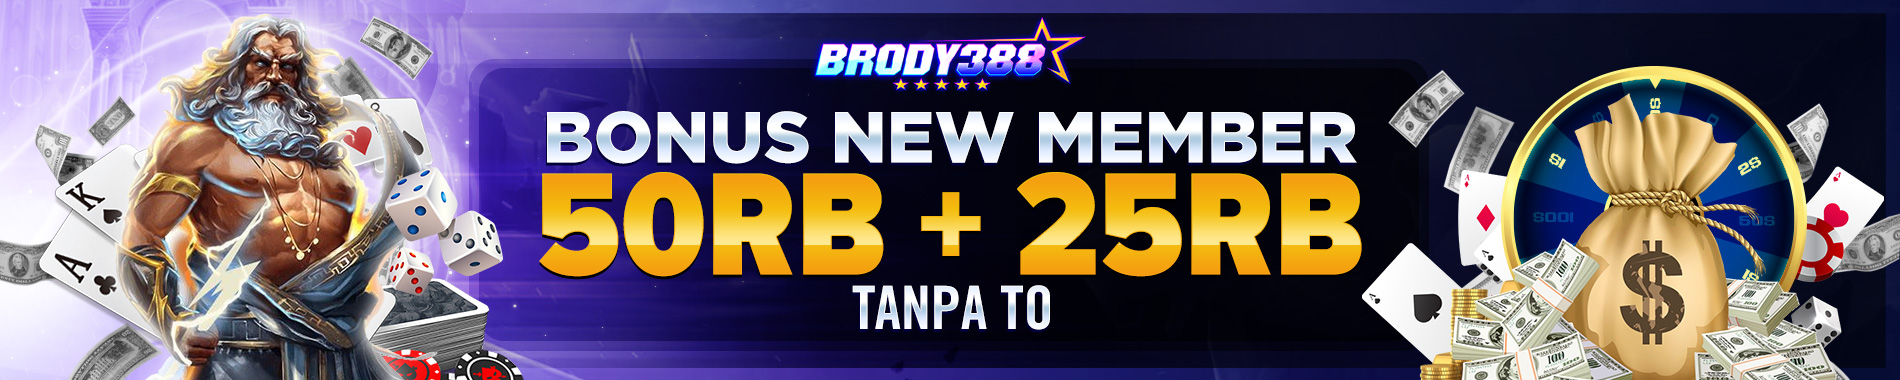 Bonus New Member Brody388